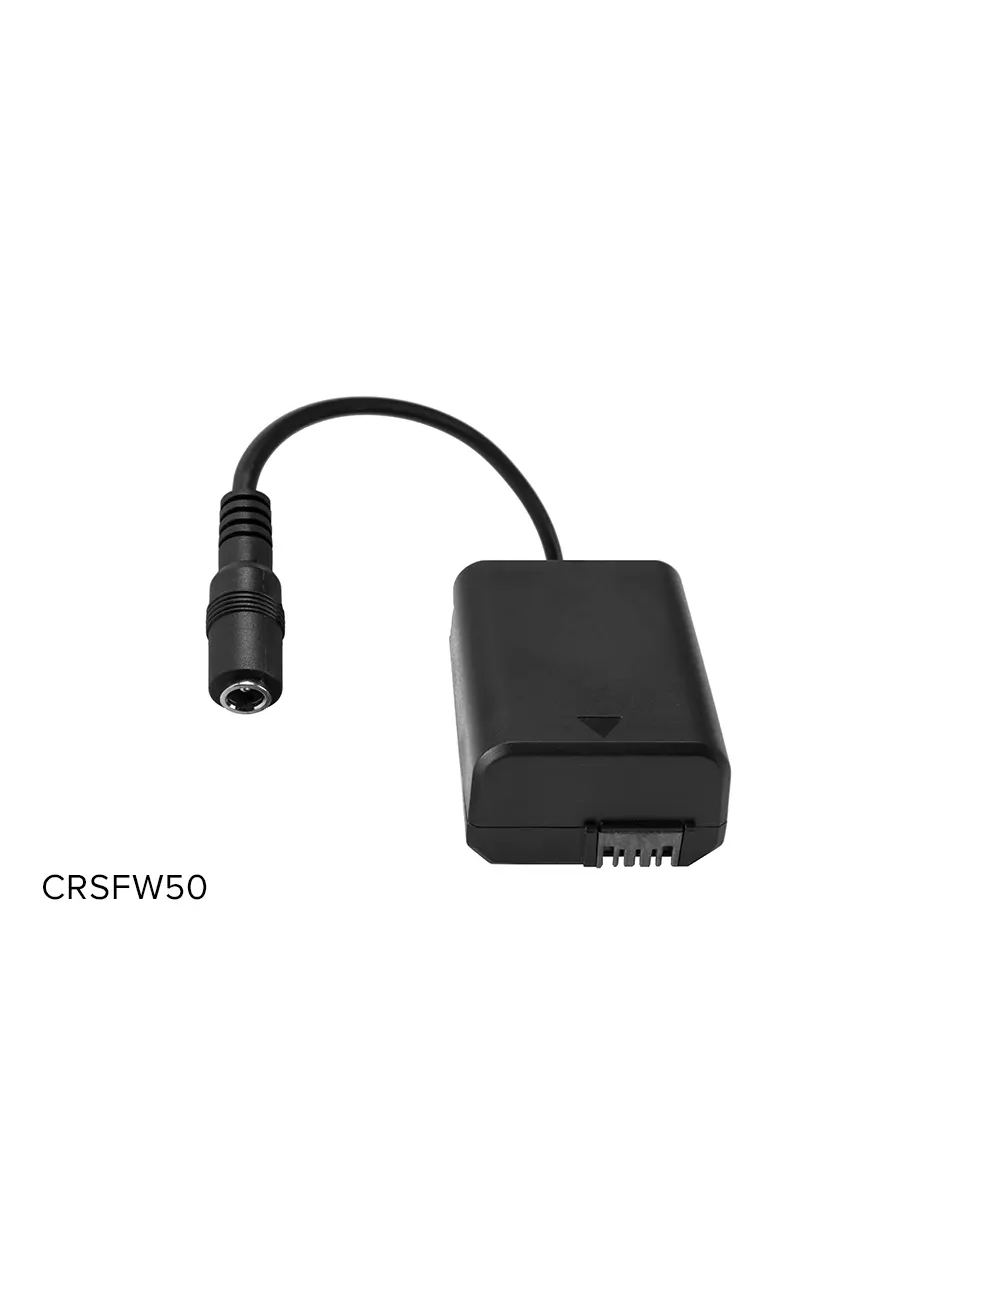 Philco Cargador USB Doble puerto Con Cable Micro R2100 Blanco 220v